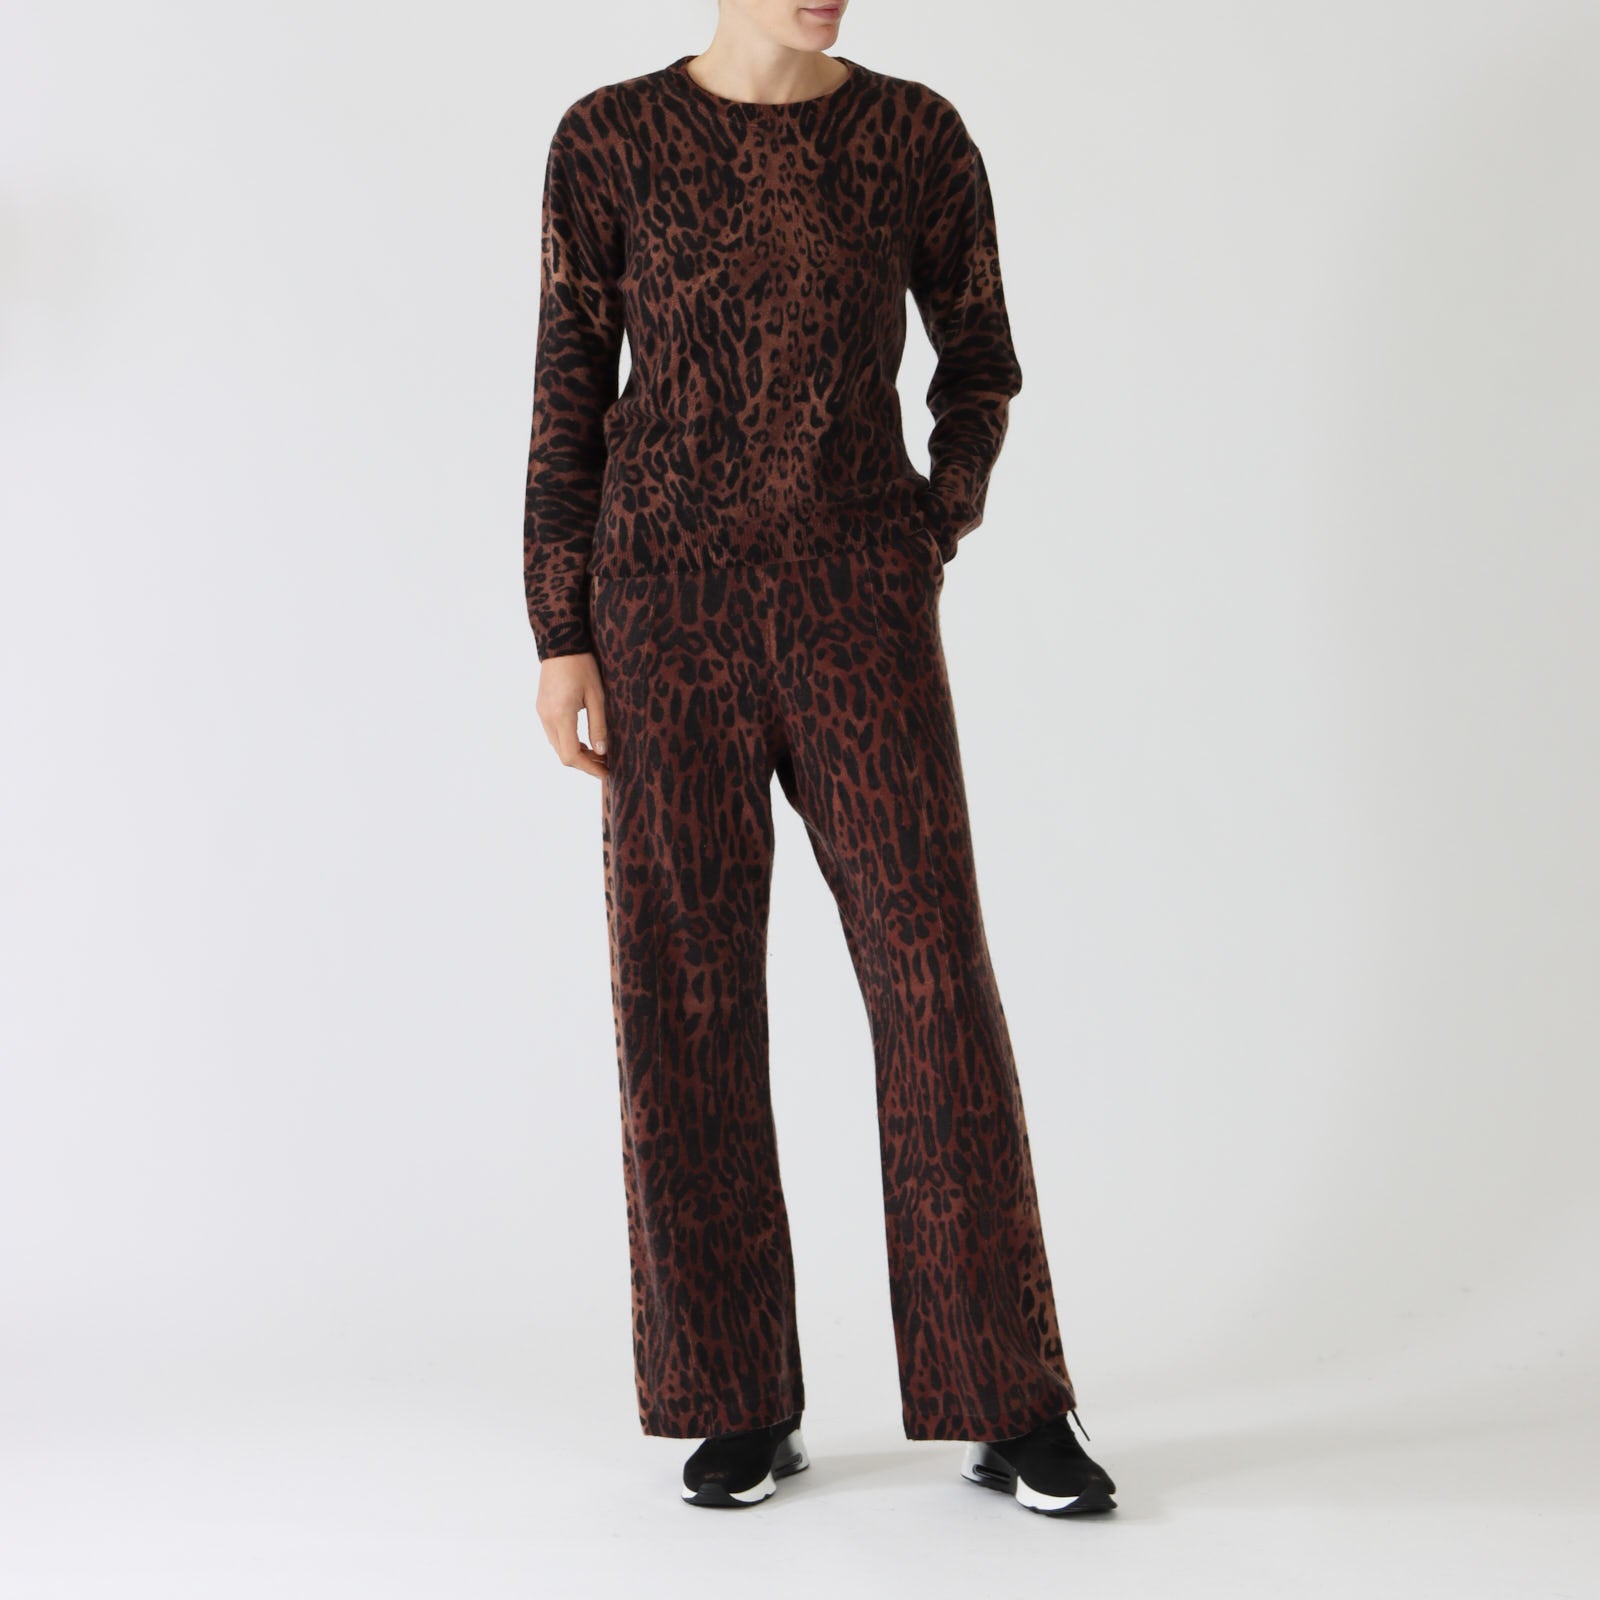 Tia Leopard Printed Pure Cashmere Sweater